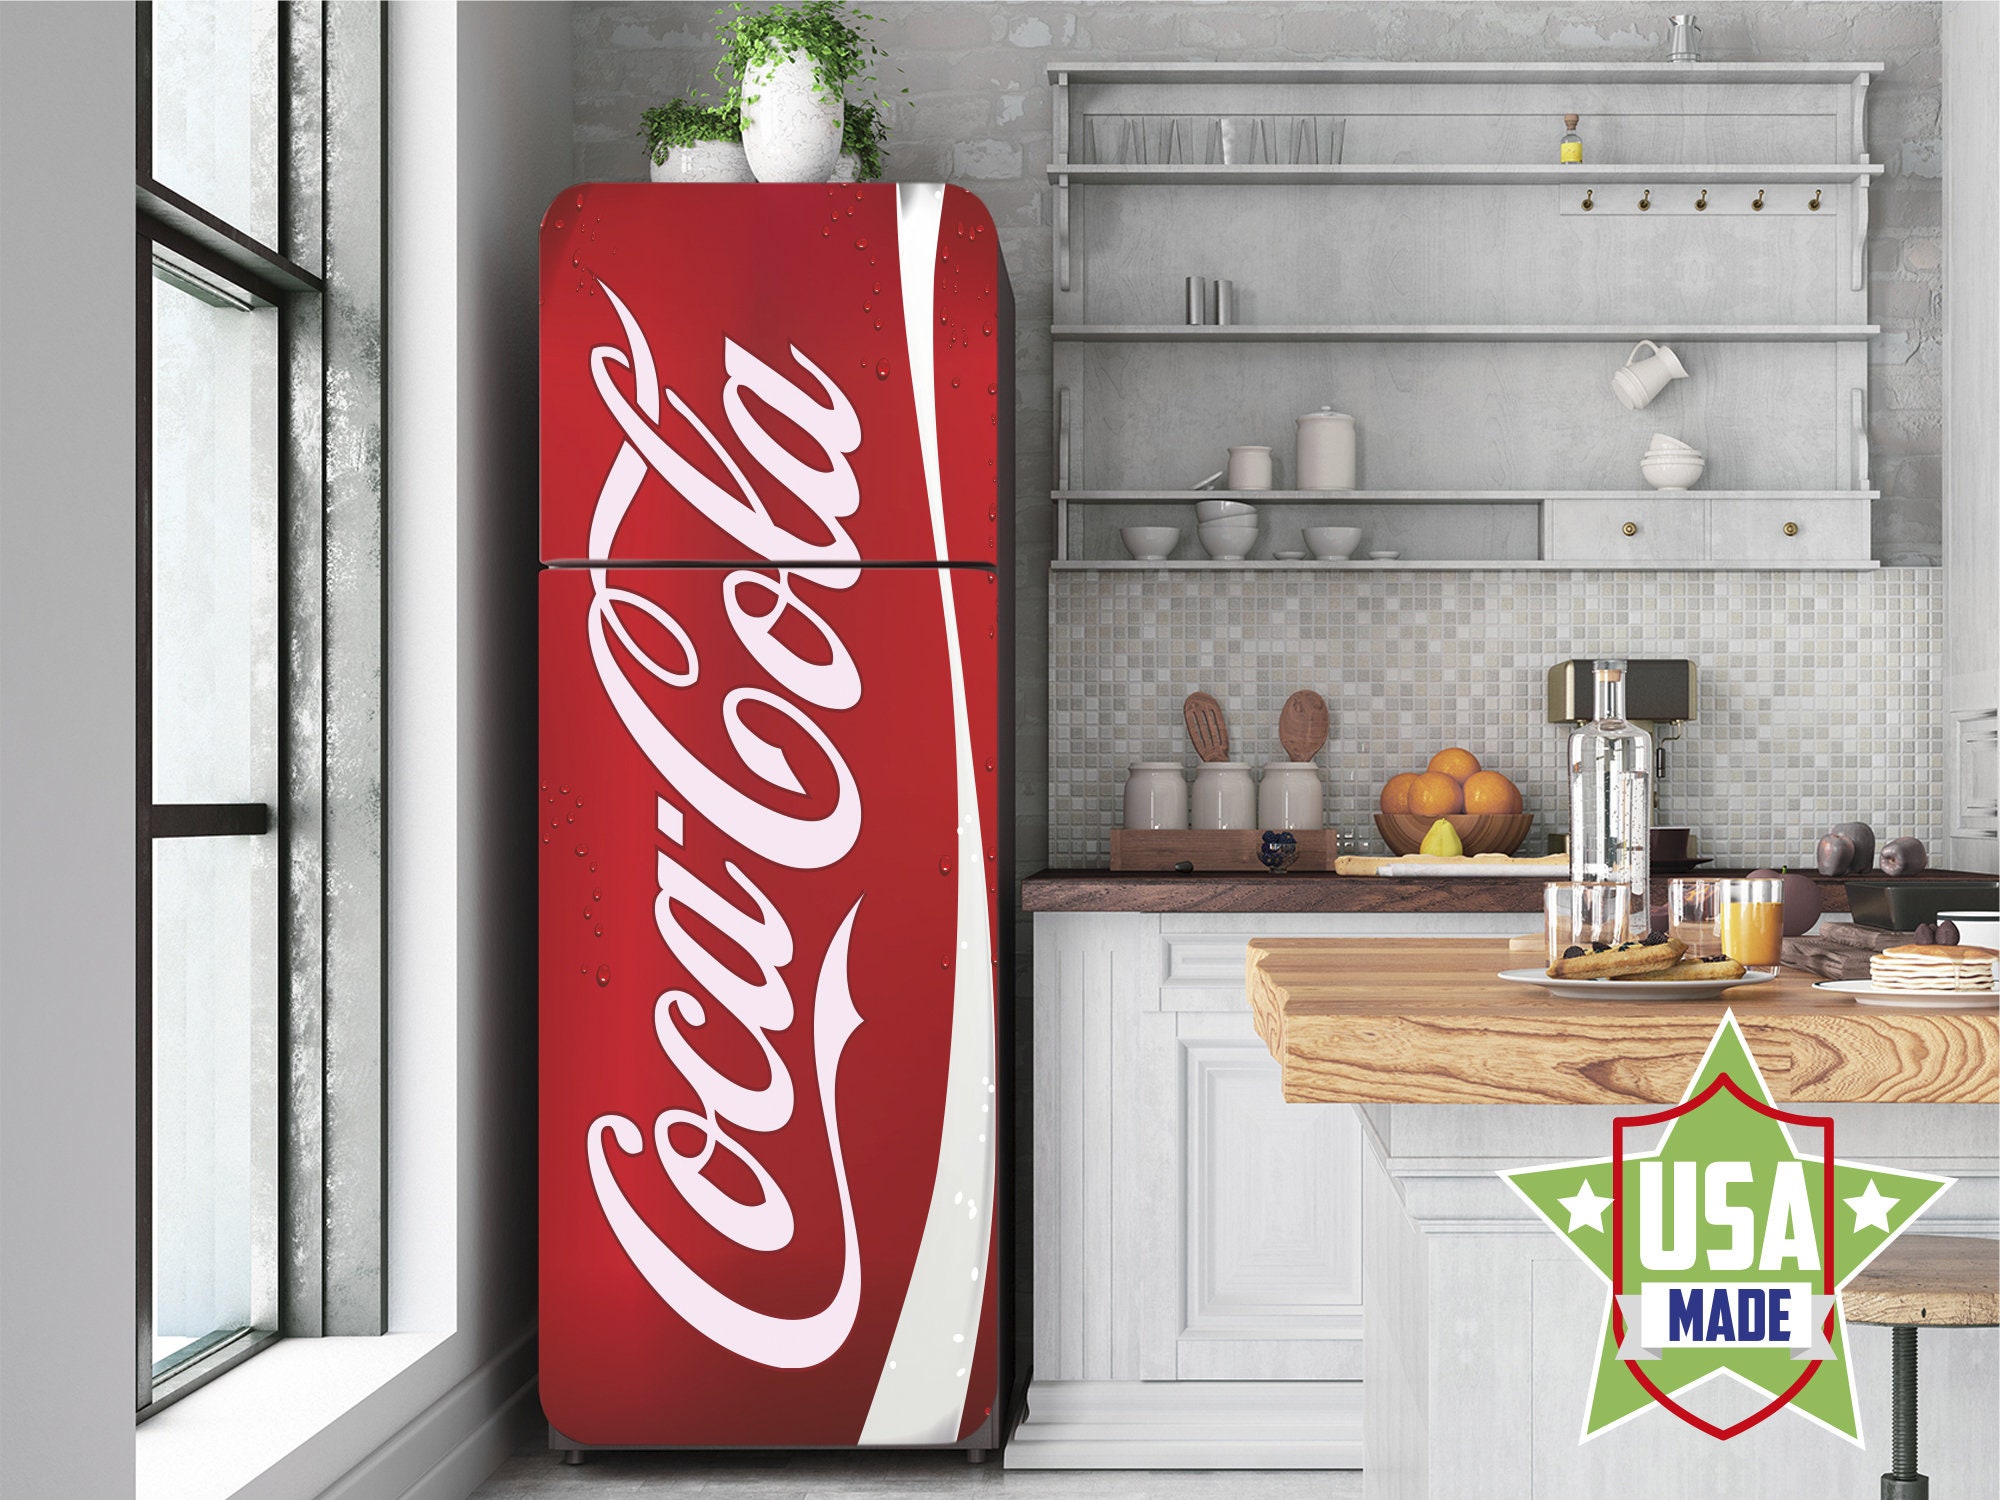 Réfrigérateur vintage Coca Cola, Machines et accessoires